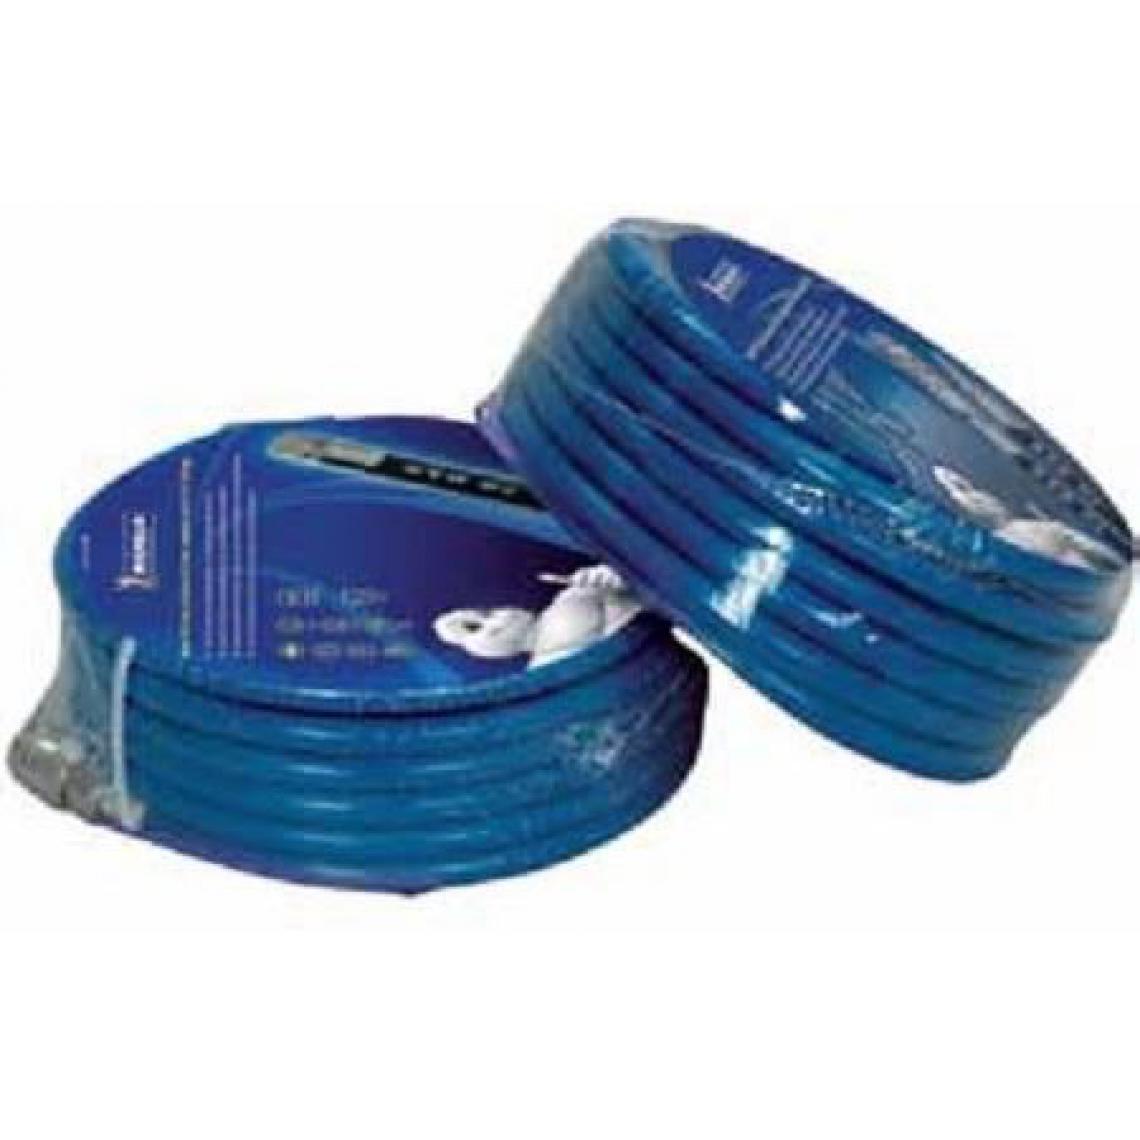 Icaverne - TUYAU - TUBE - FLEXIBLE Tuyau Flexible 10 Mt Pvc Bleue Sortie 1/4 F - Coudes et raccords PVC